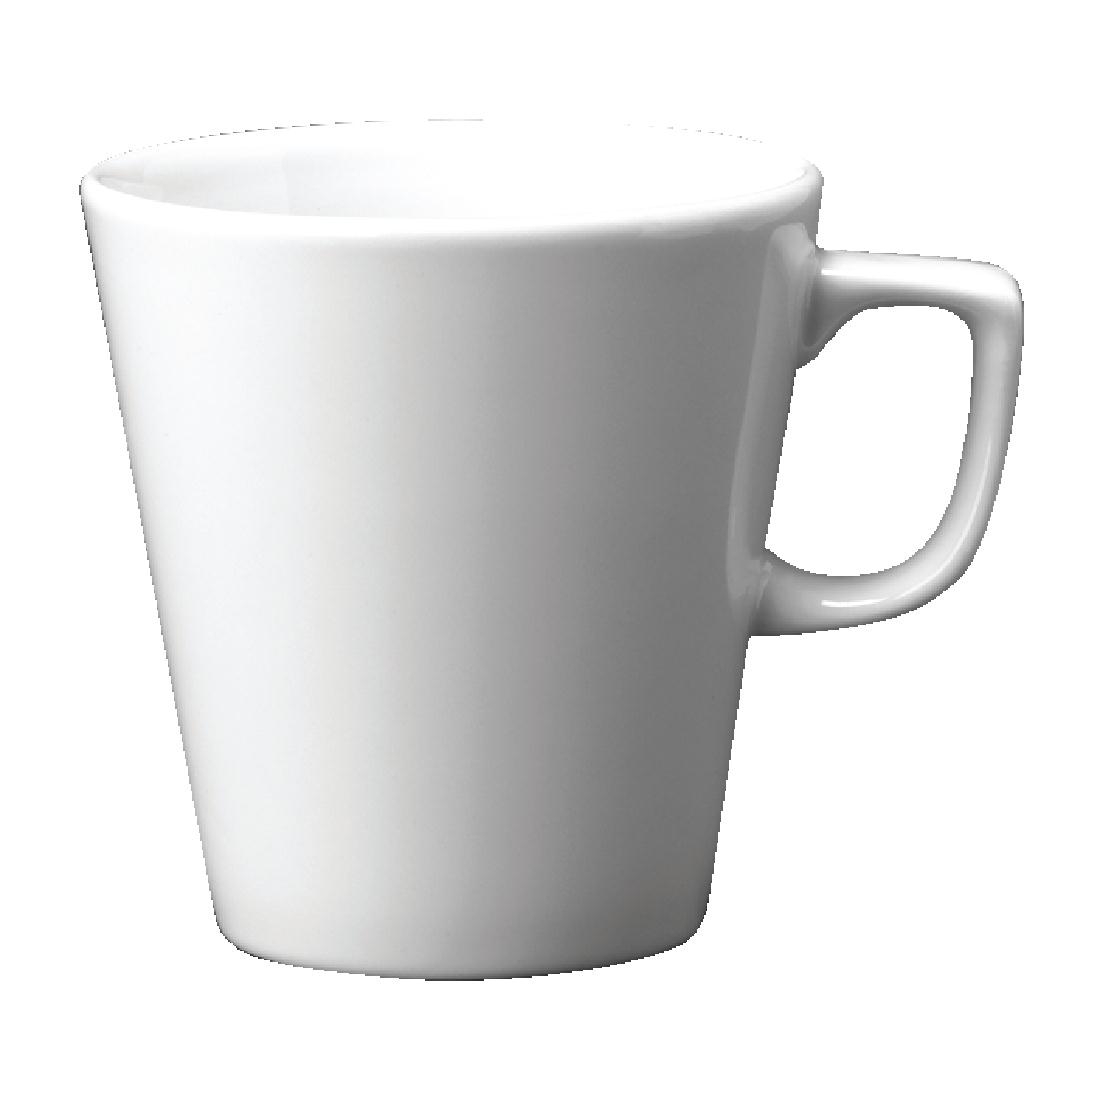 Churchill Plain Whiteware Cafe Latte Mugs 340ml